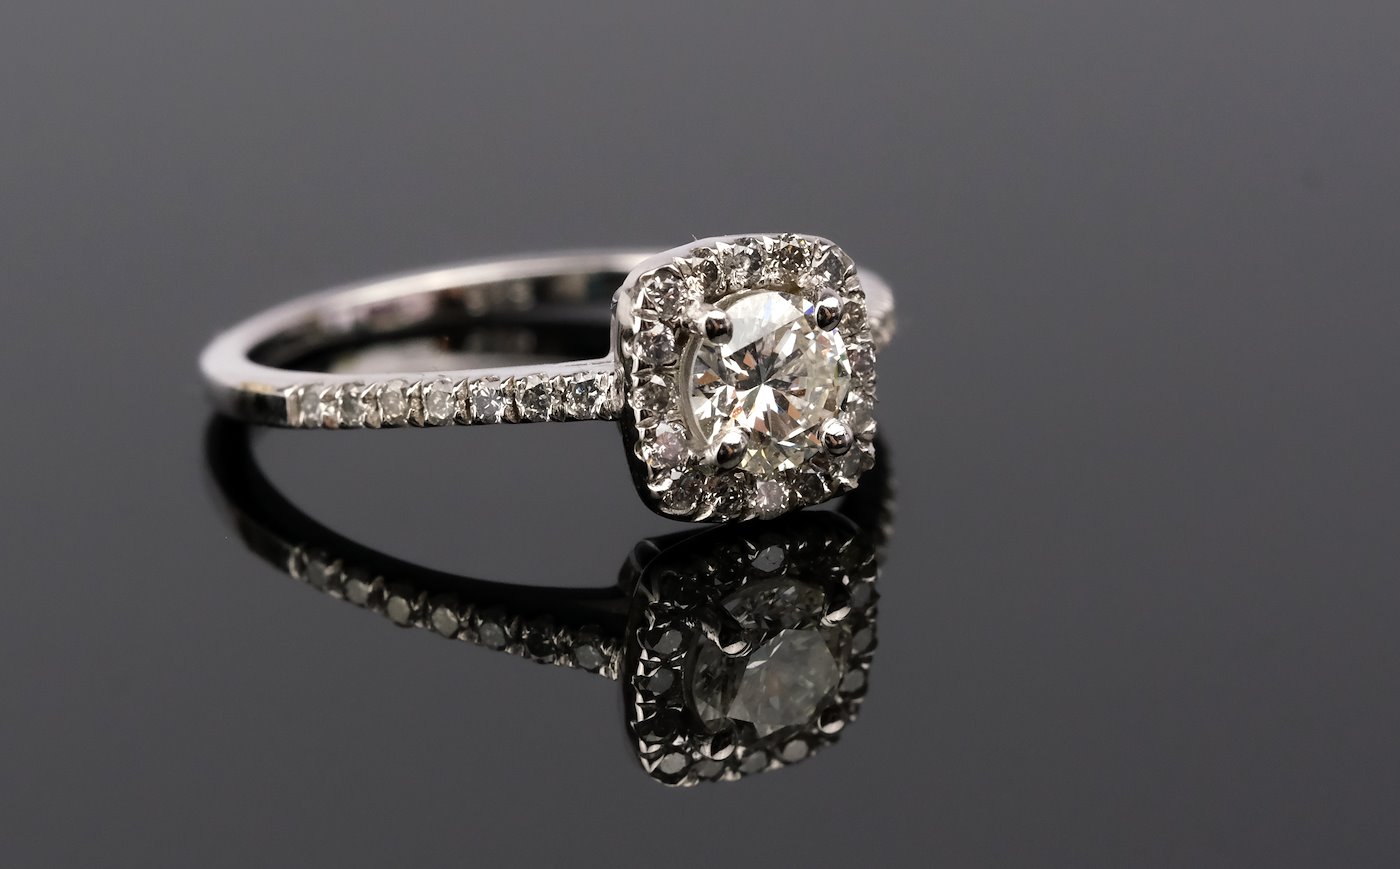 .. - Luxusní prsten s přírodním diamantem 0,78ct, vyrobený z bílého zlata 585/1000, značeno platnou puncovní značkou "labuť", hrubá hmotnost 2,31 g